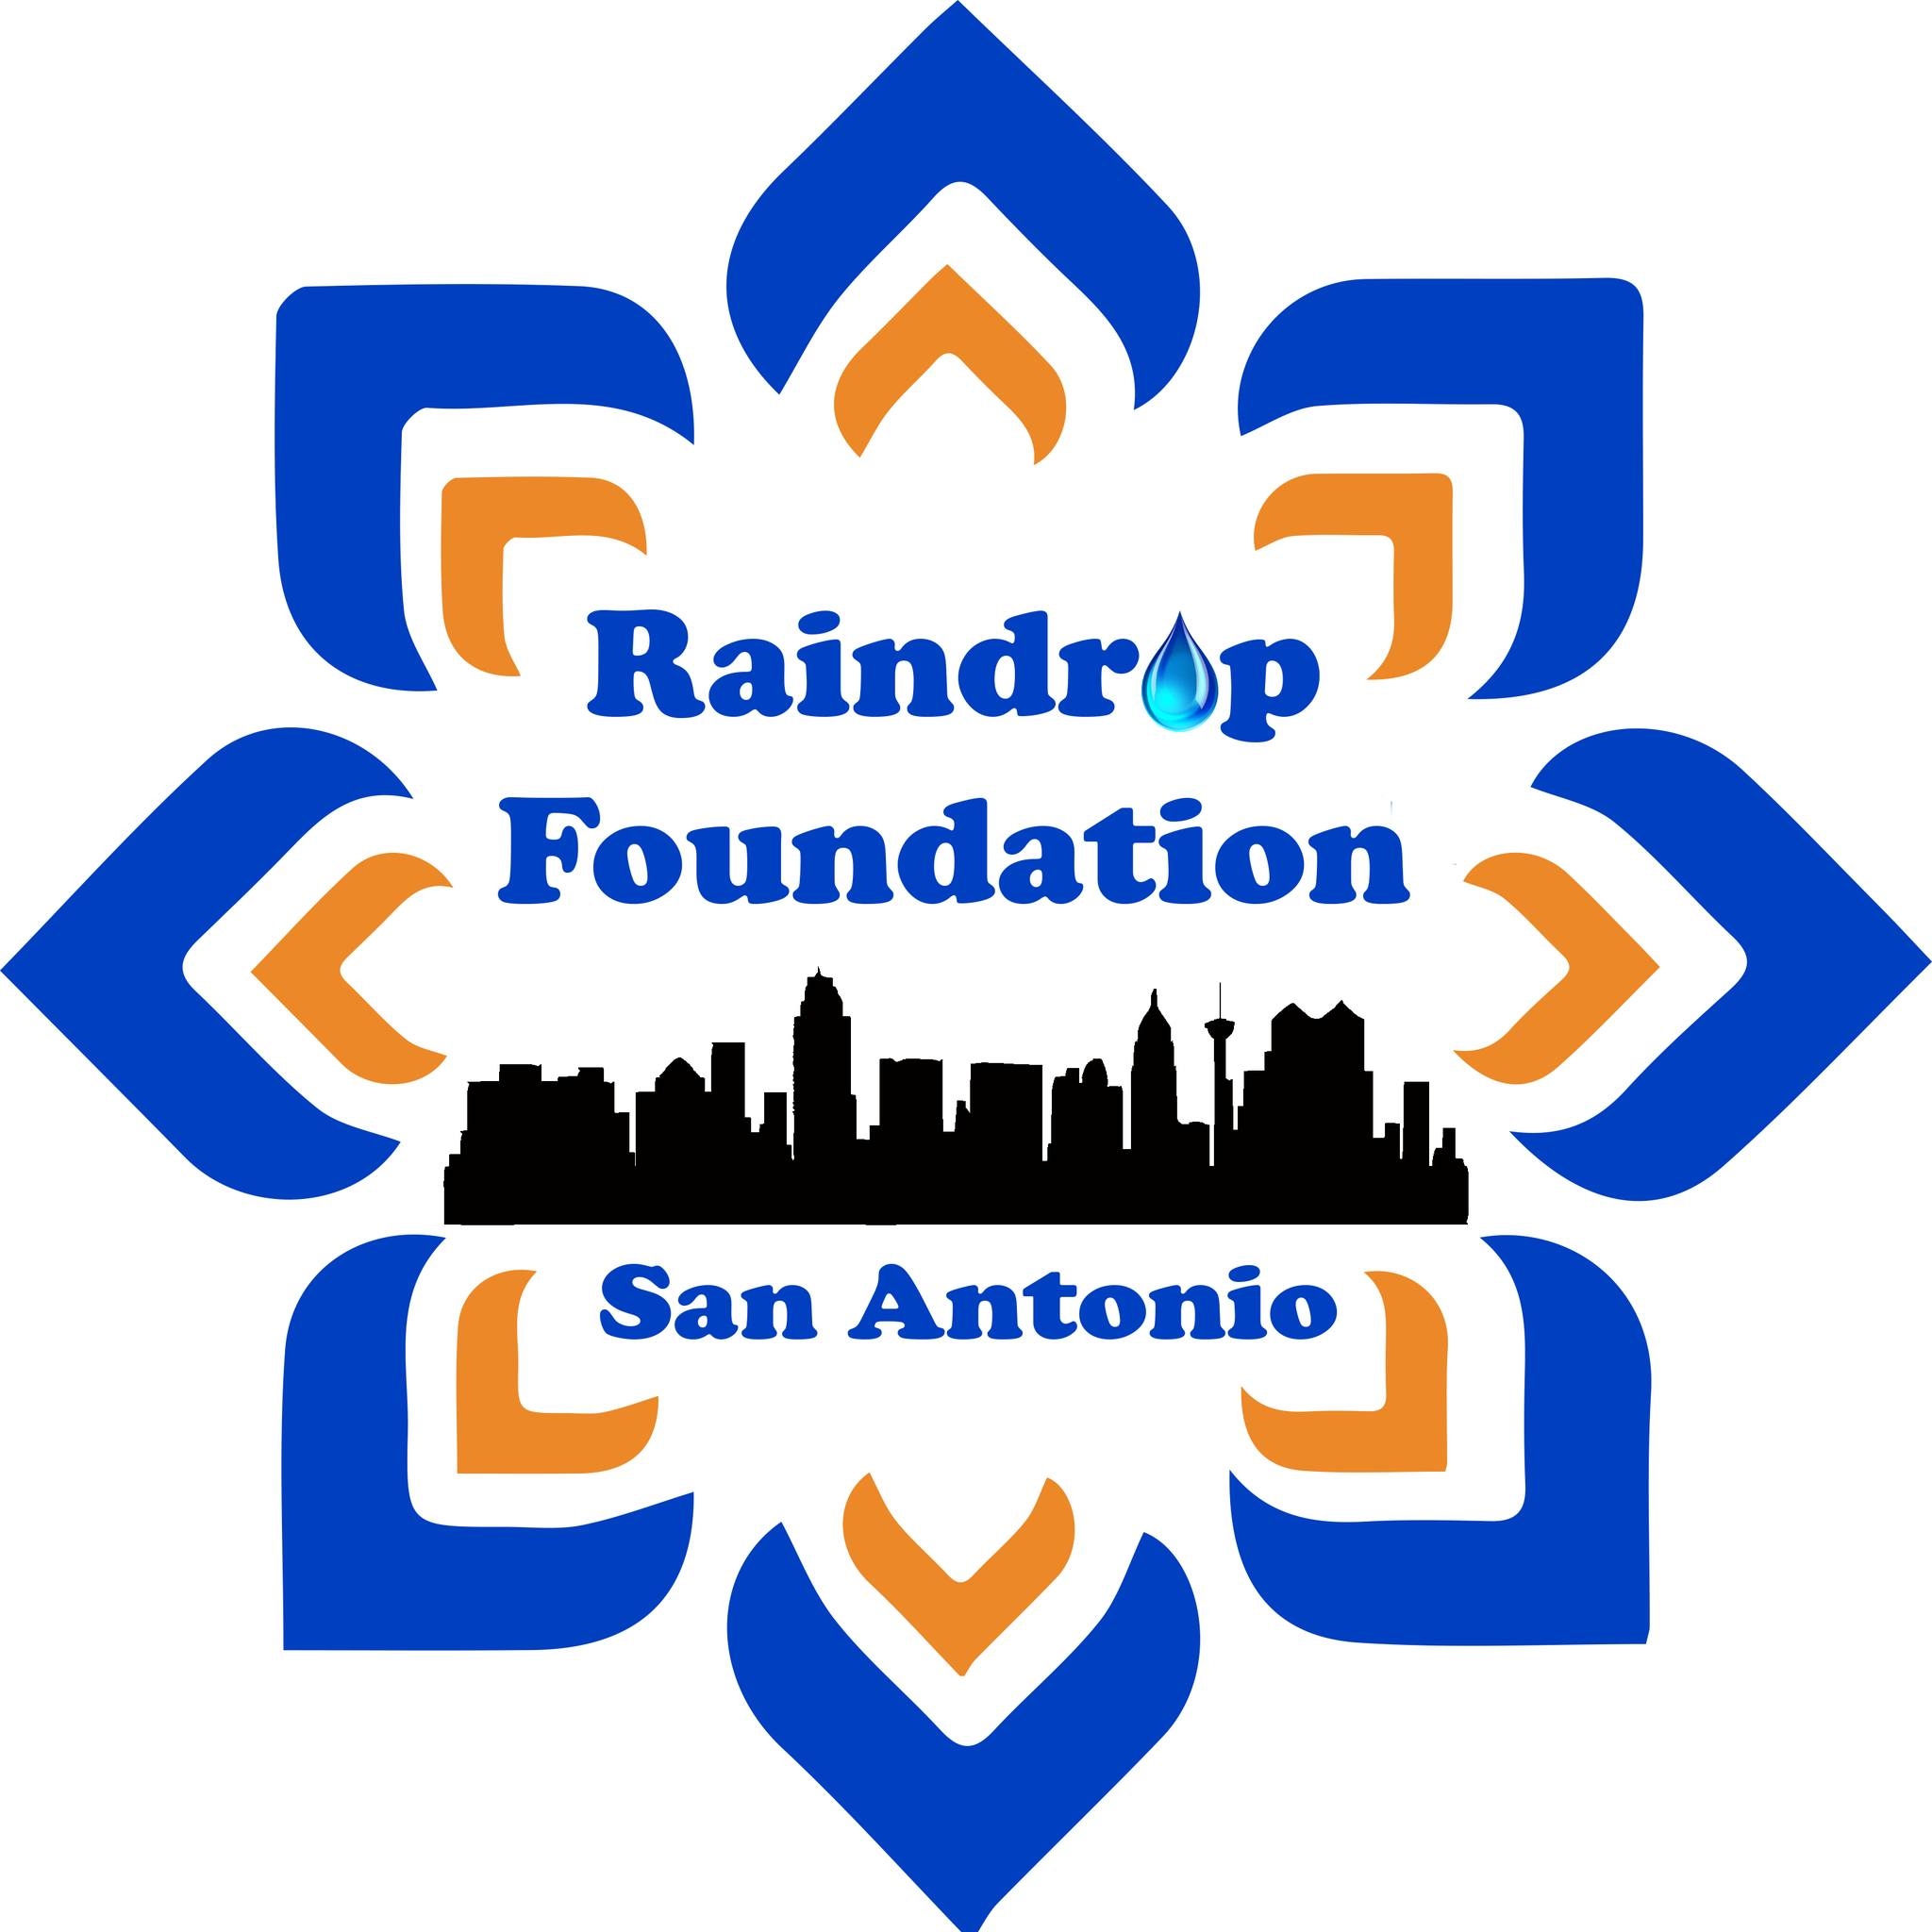 Raindrop Foundation San Antonio Logo